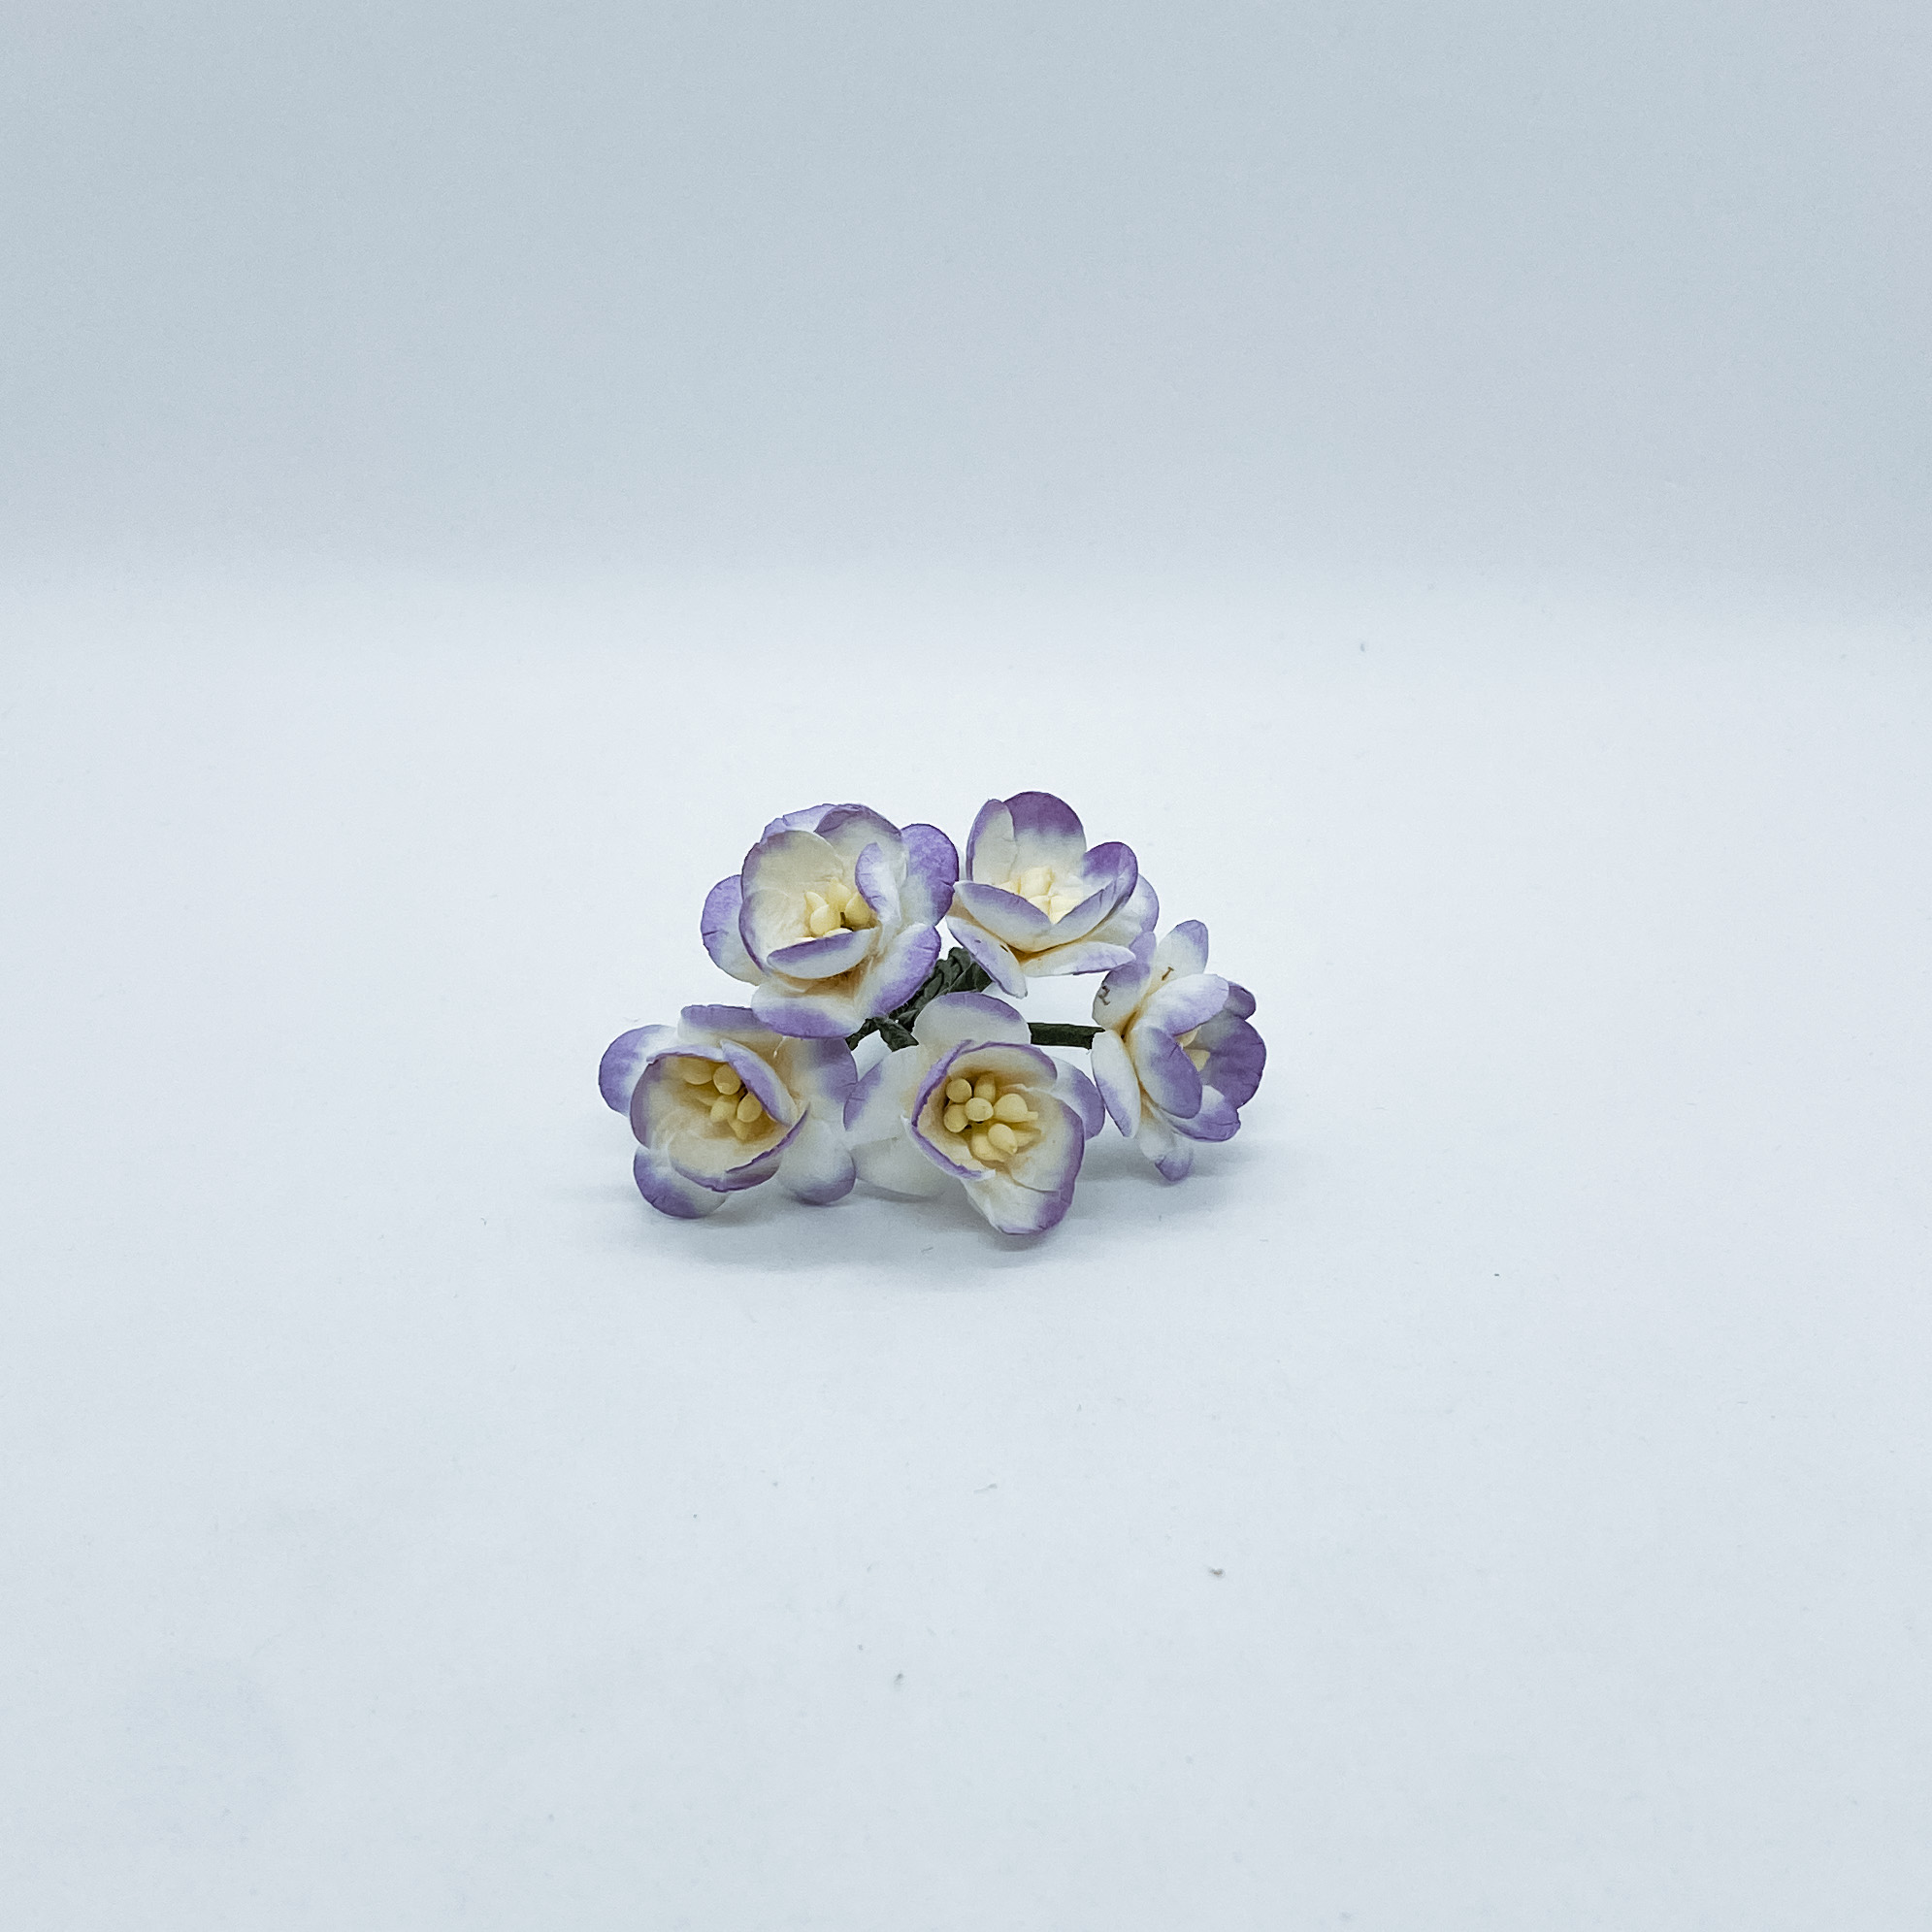 Набор  декоративных цветков вишни в фиолетовых тонах  5 шт.